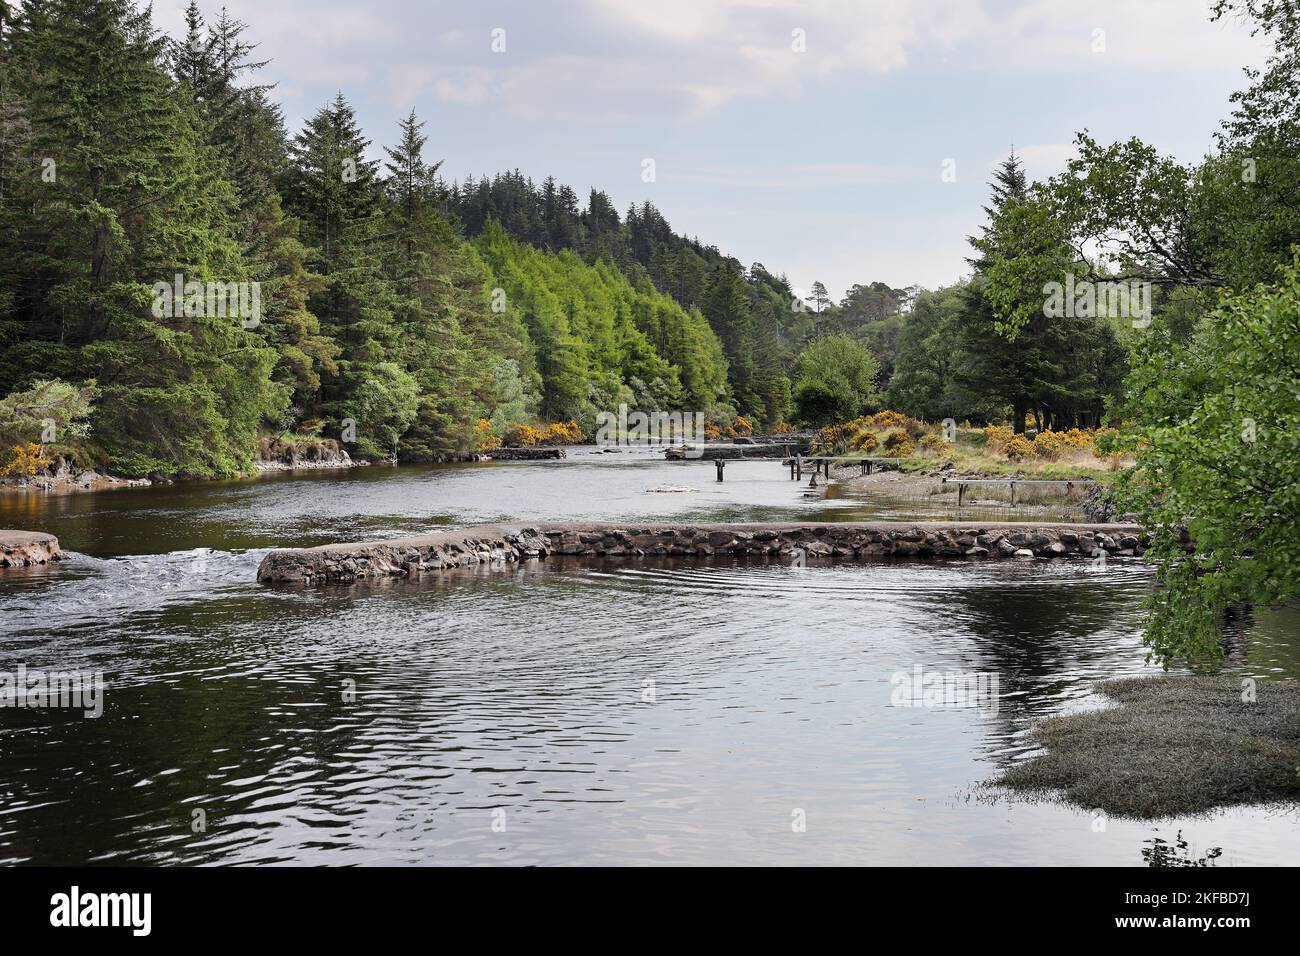 The River Inver, Lochinver, Scotland, UK Stock Photo